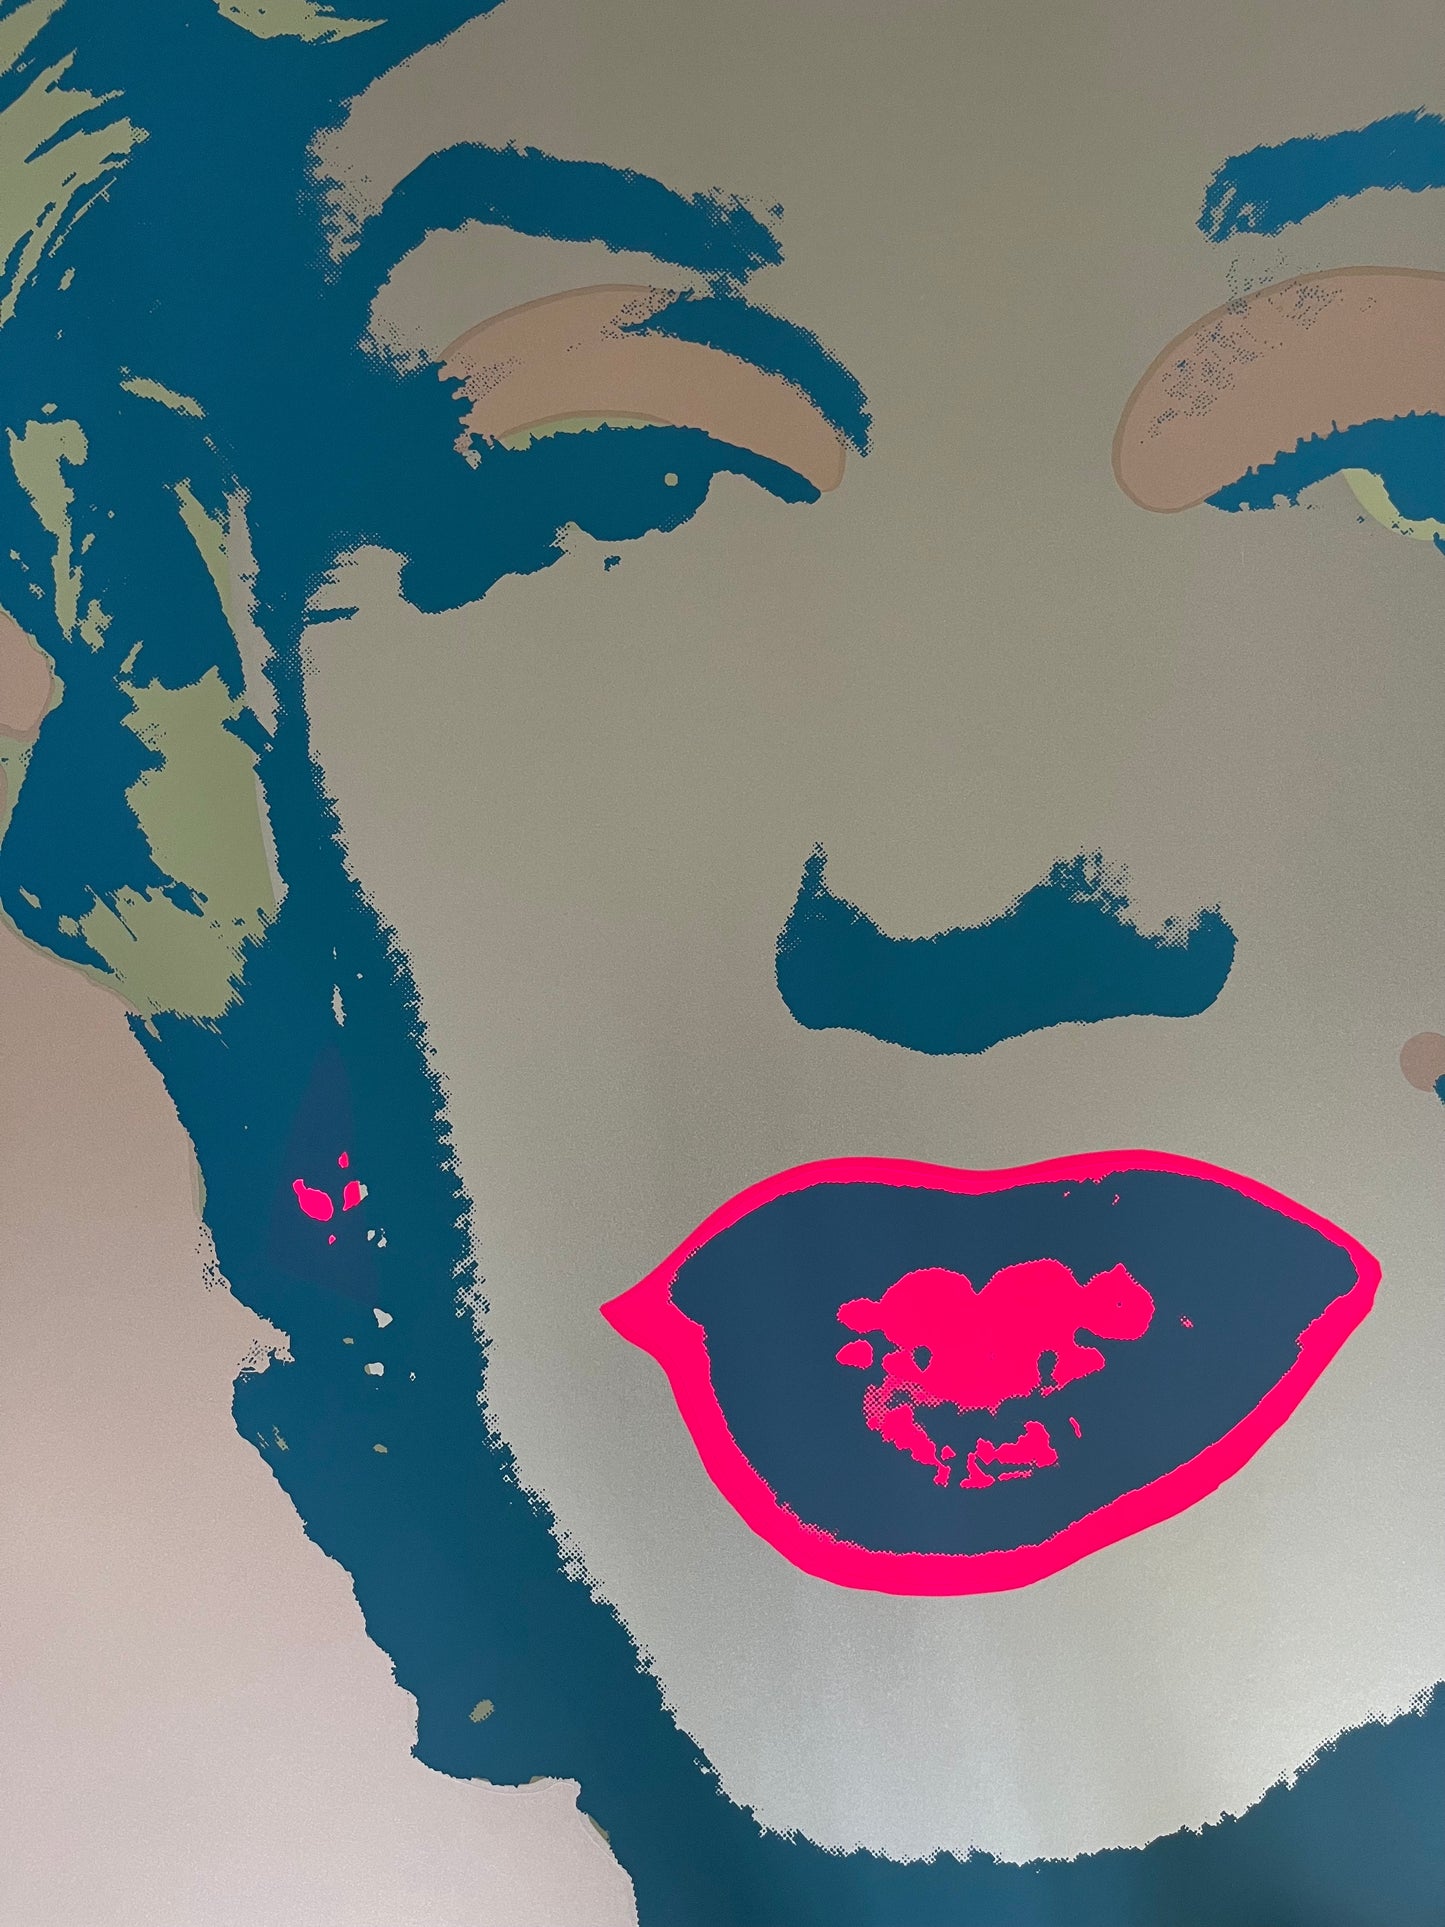 Andy Warhol - Marilyn Monroe - 1980 - Serigrafía oficial